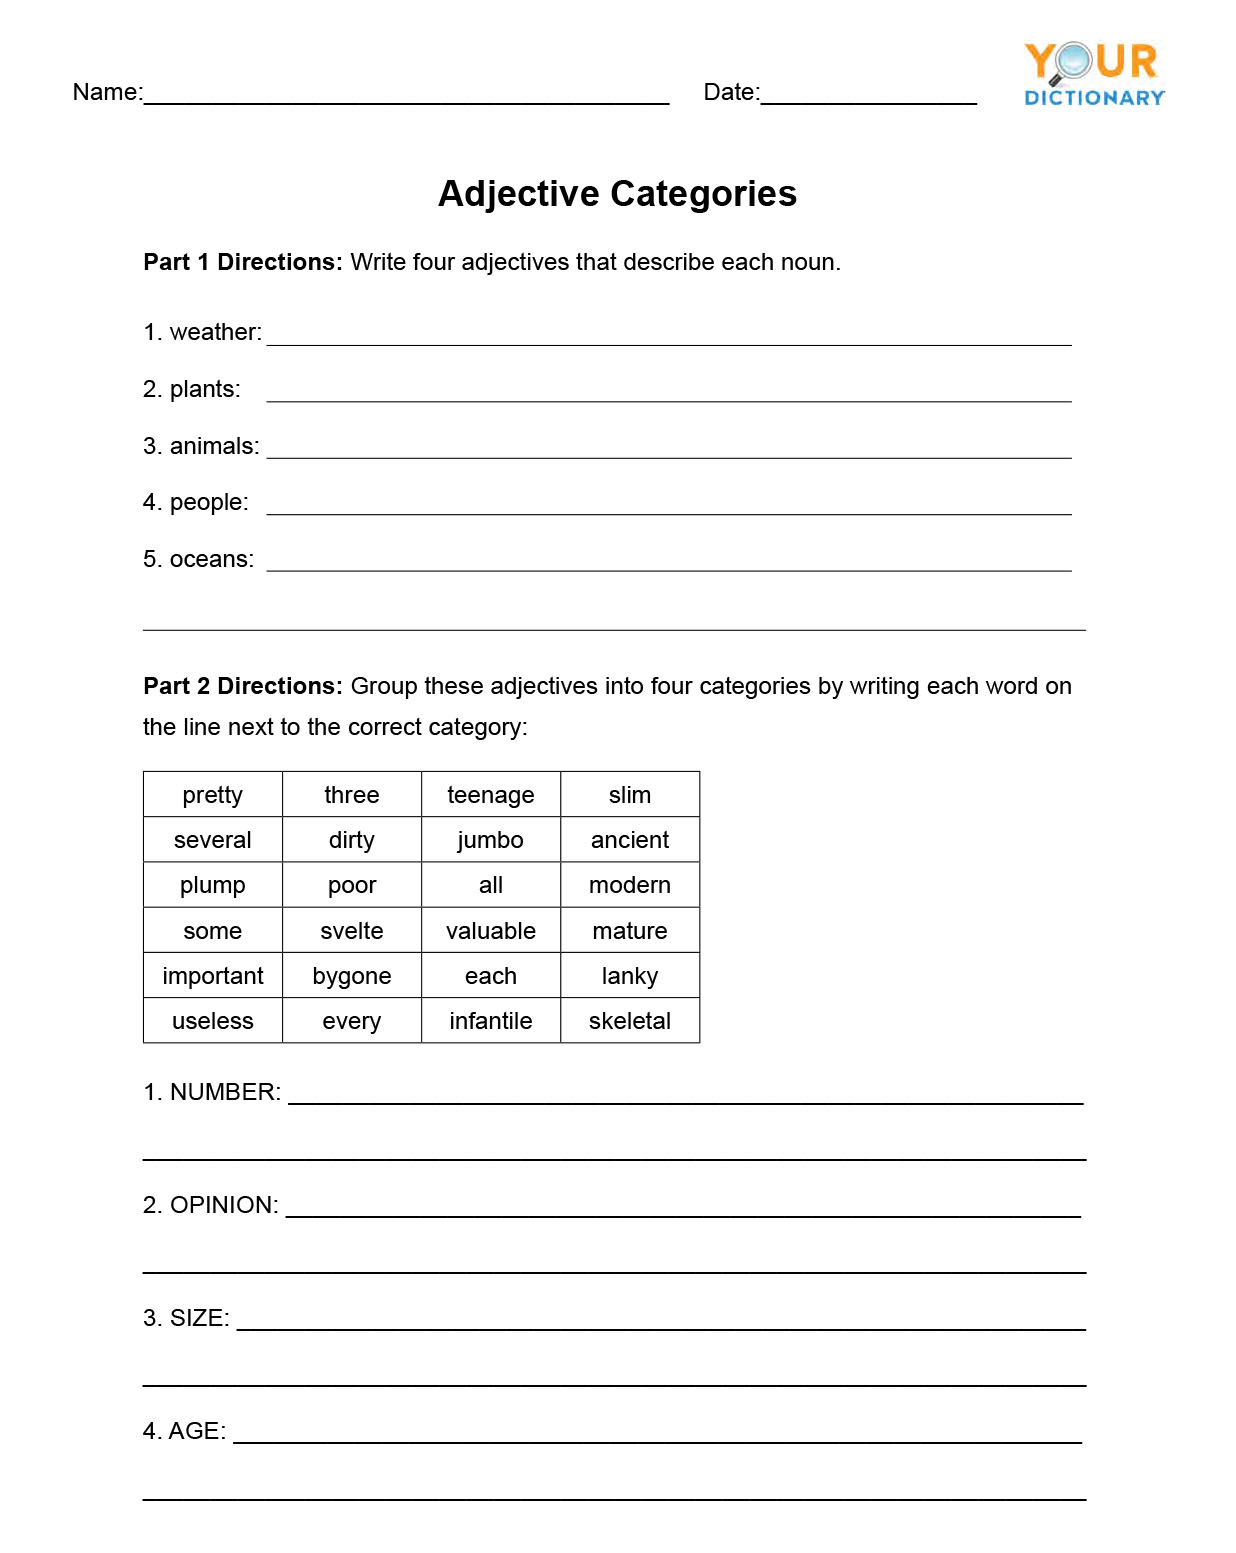 Adjective Categories Worksheet